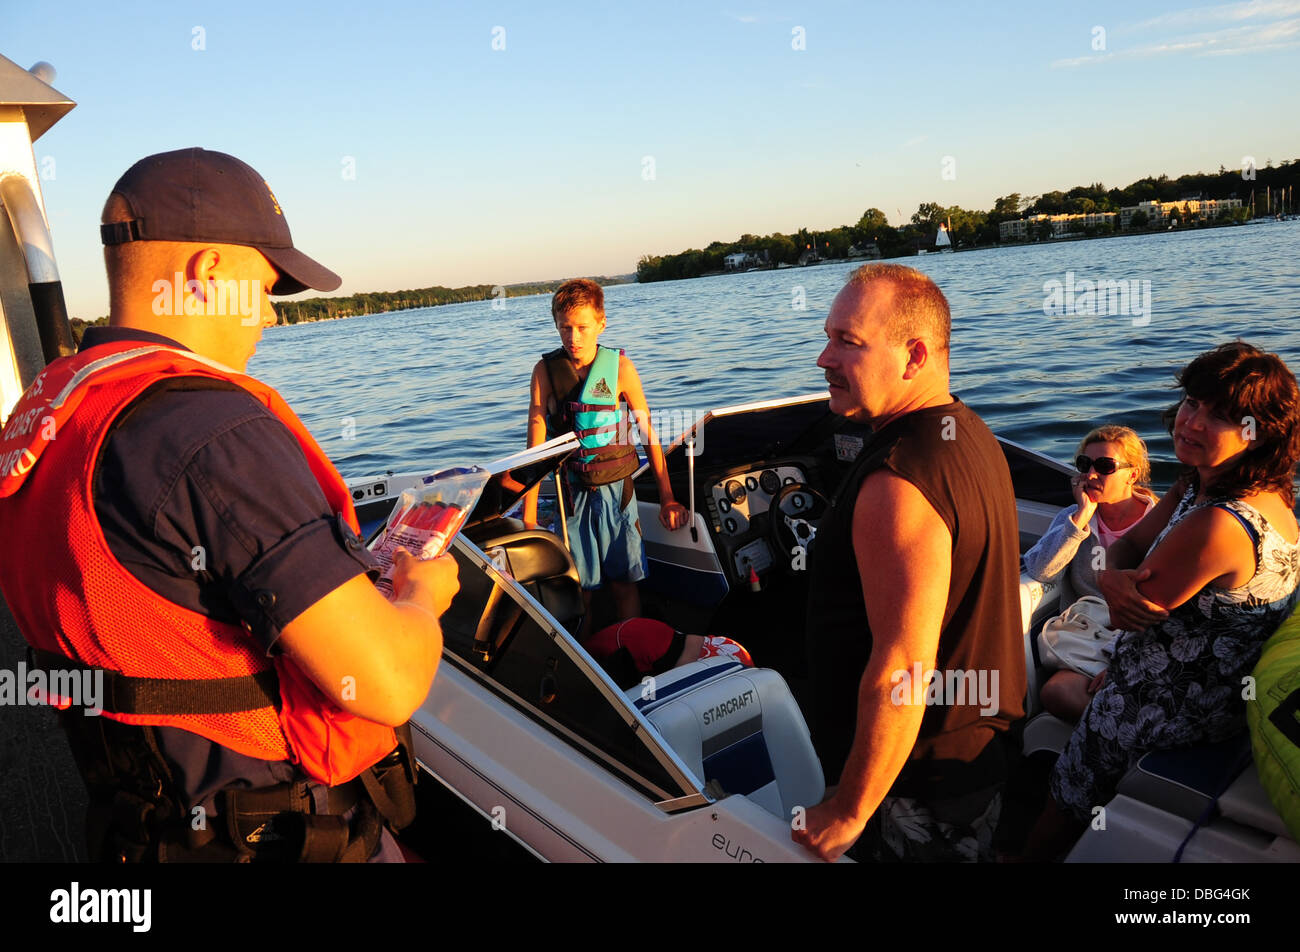 Fireman Jared Lawhead, un imbarco teammember dalla Stazione della Guardia Costiera Niagara, esamina un pacchetto di razzi durante una sicurezza di salire a bordo di un battello da diporto sul fiume Niagara in prossimità di Youngstown, N.Y., luglio 26, 2013. La guardia costiera conduce s Foto Stock